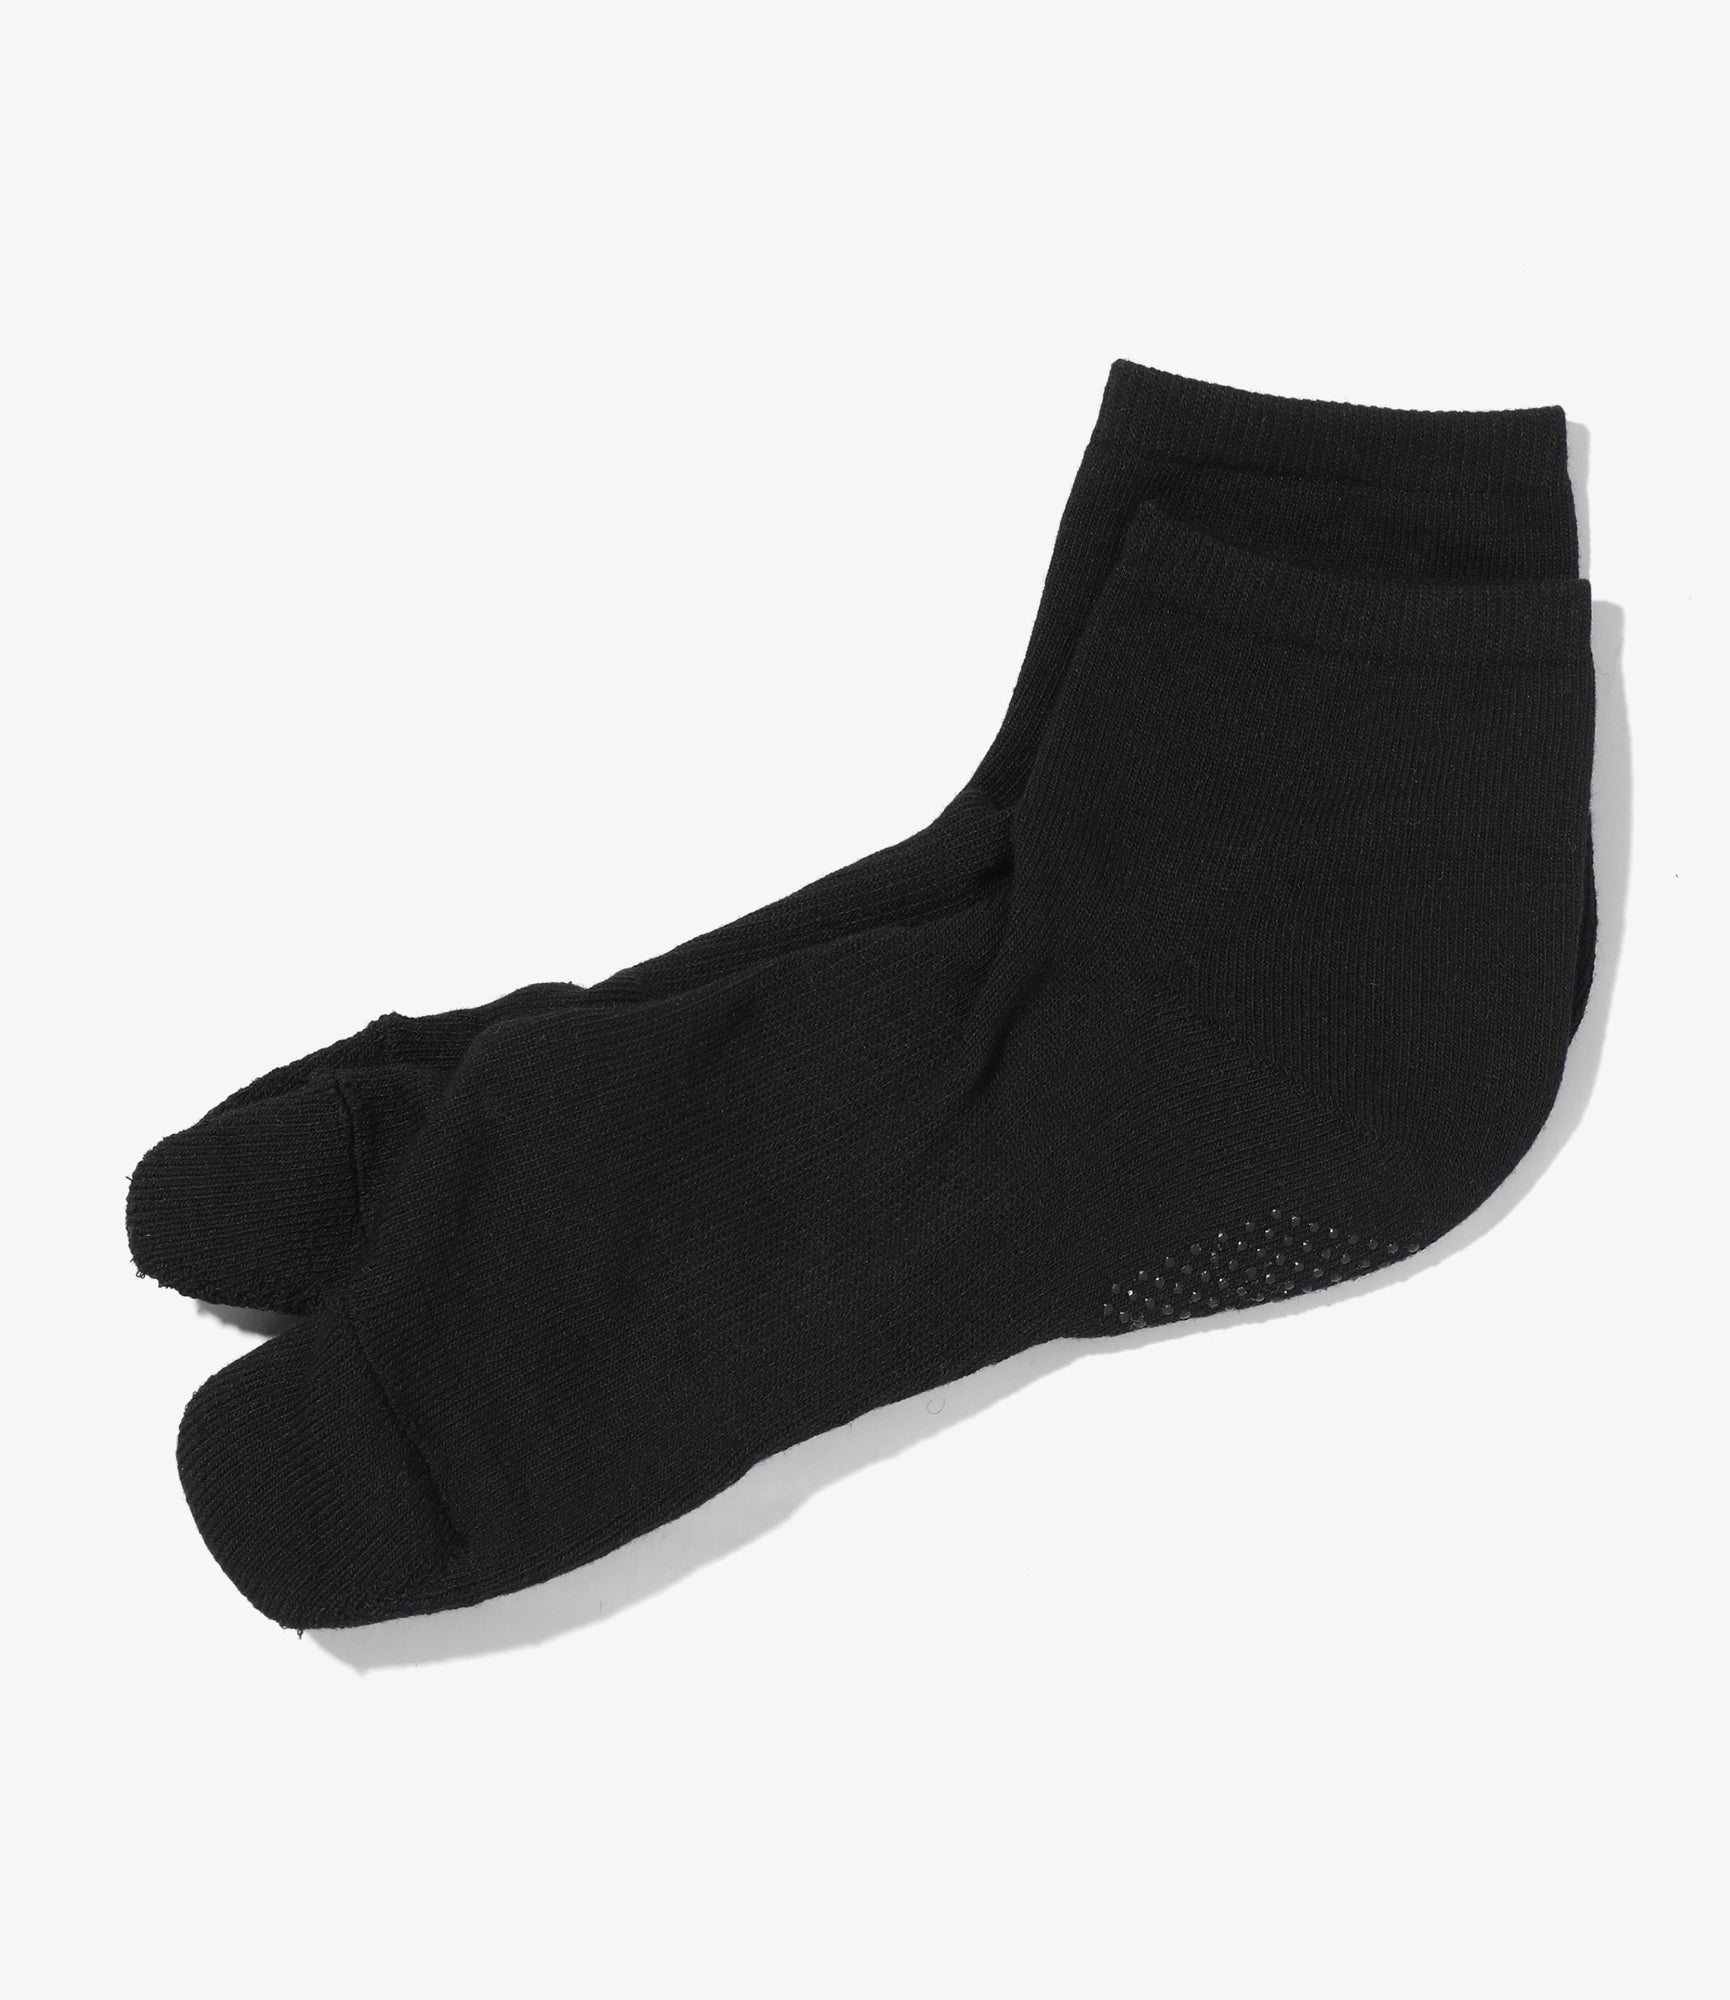 Thumb Ankle Socks - Black - Cool Max